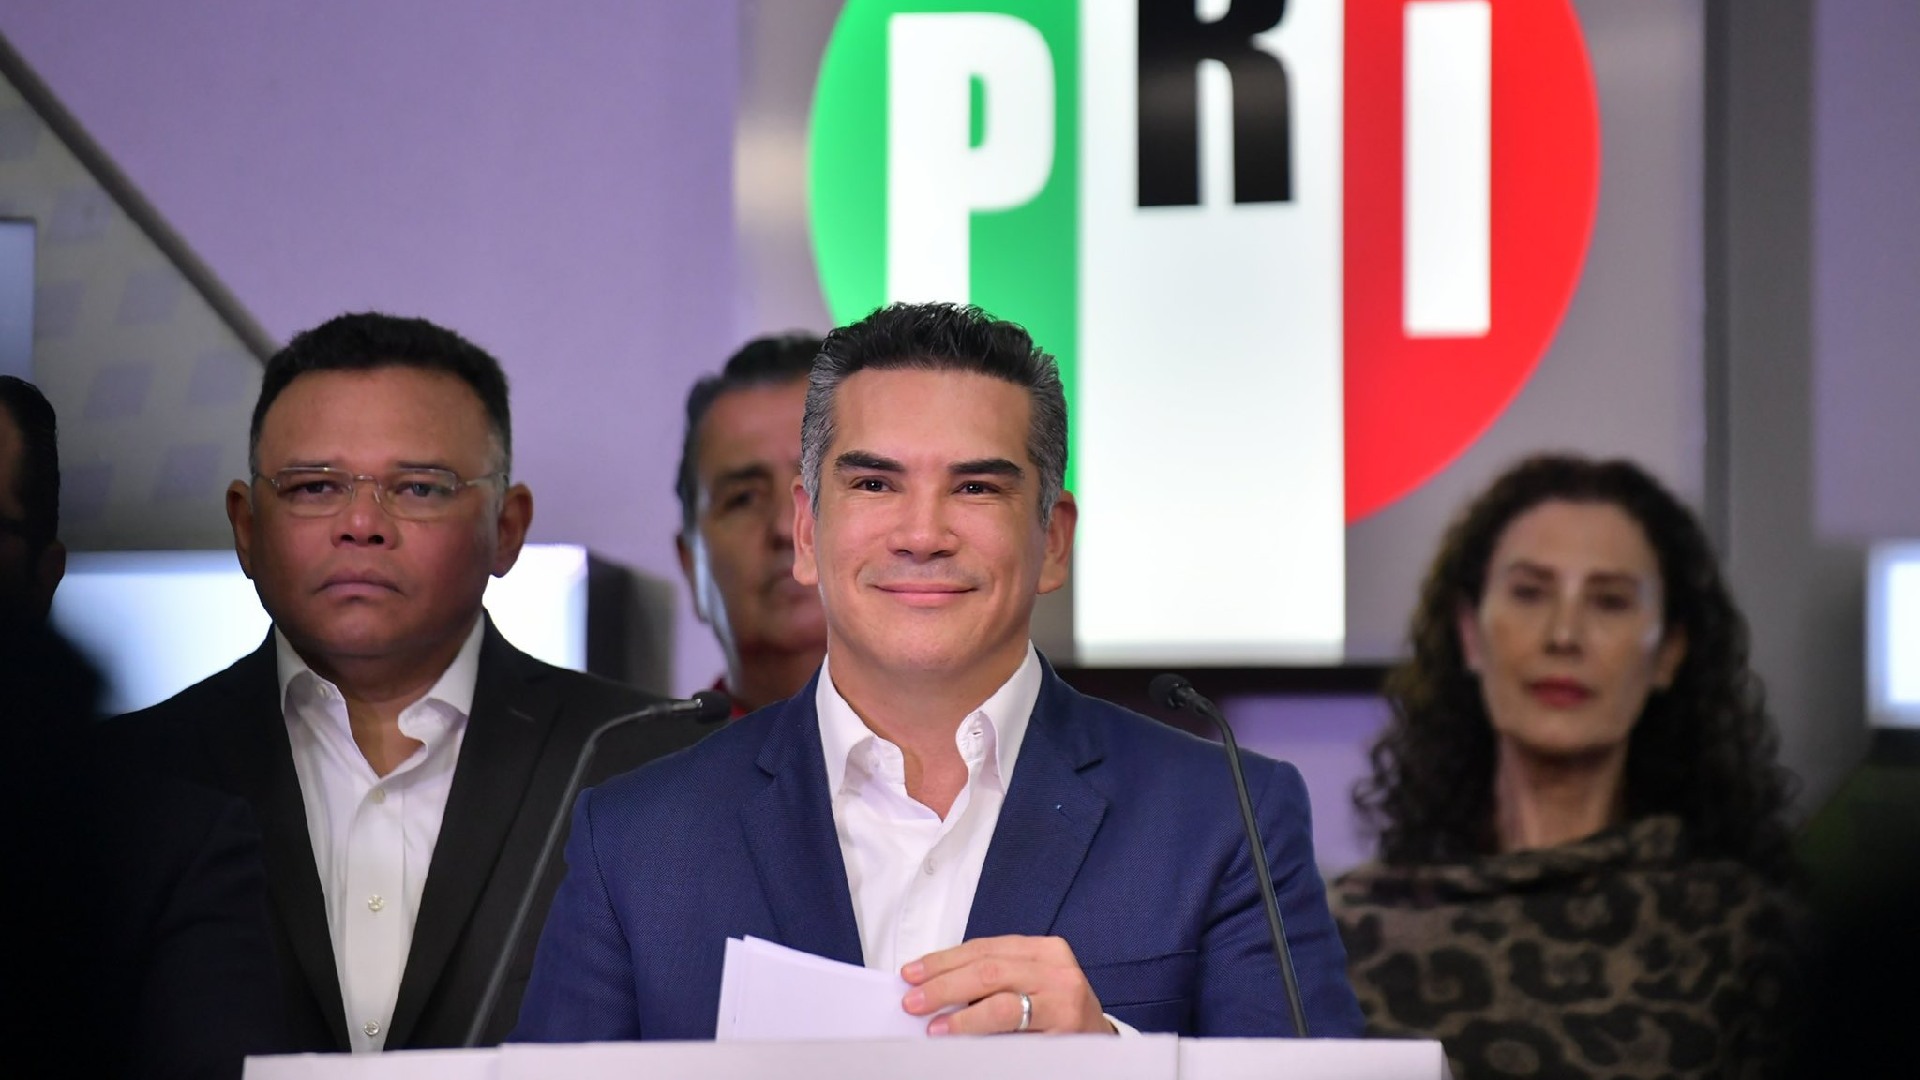 Alito Moreno expresó que está convencido de que el país tendría totalmente otro panorama si los votos de Movimiento Ciudadano y el PRI se hubieran recibido juntos en una alianza (Foto: Twitter/alitomorenoc)